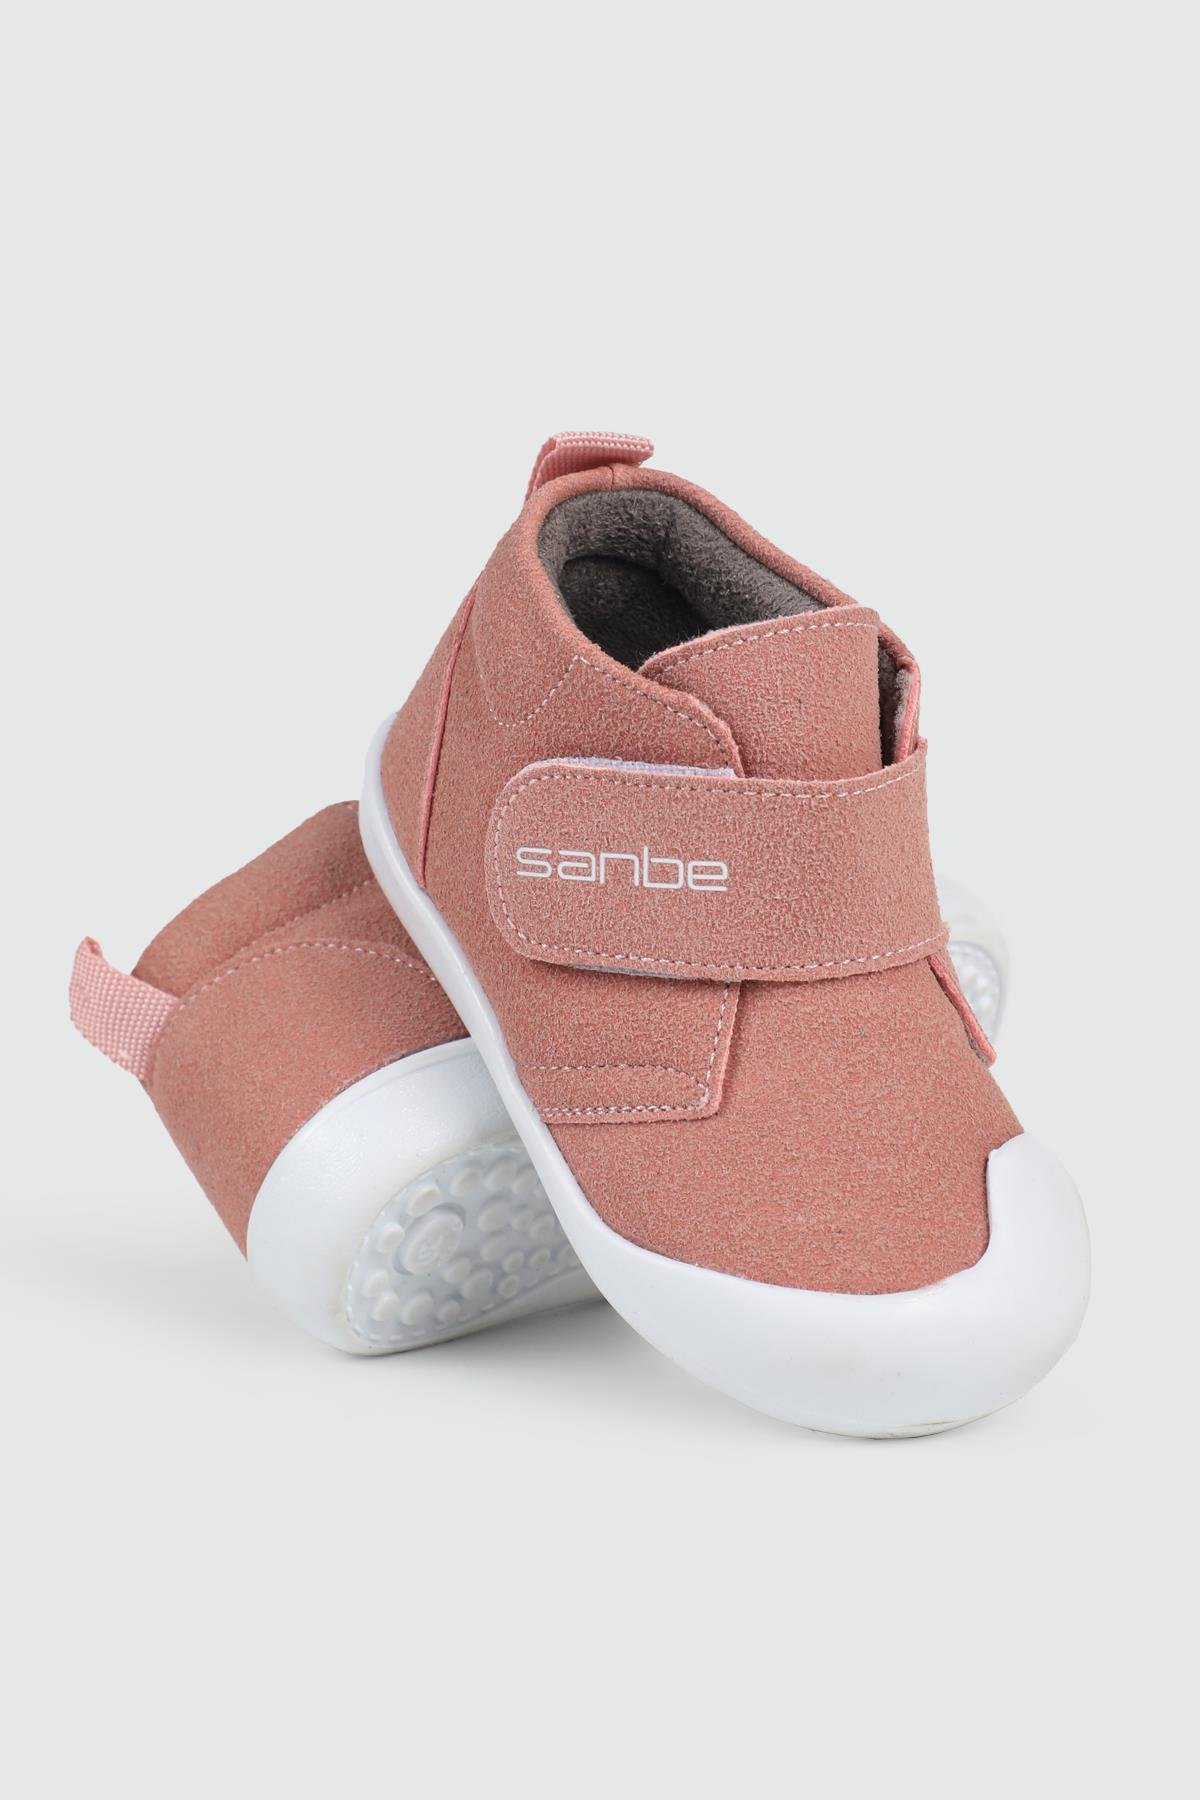 SANBE İlk Adım Ortopedik Pudra Çocuk Ayakkabı SANBE 3903 | Ayakkabı City